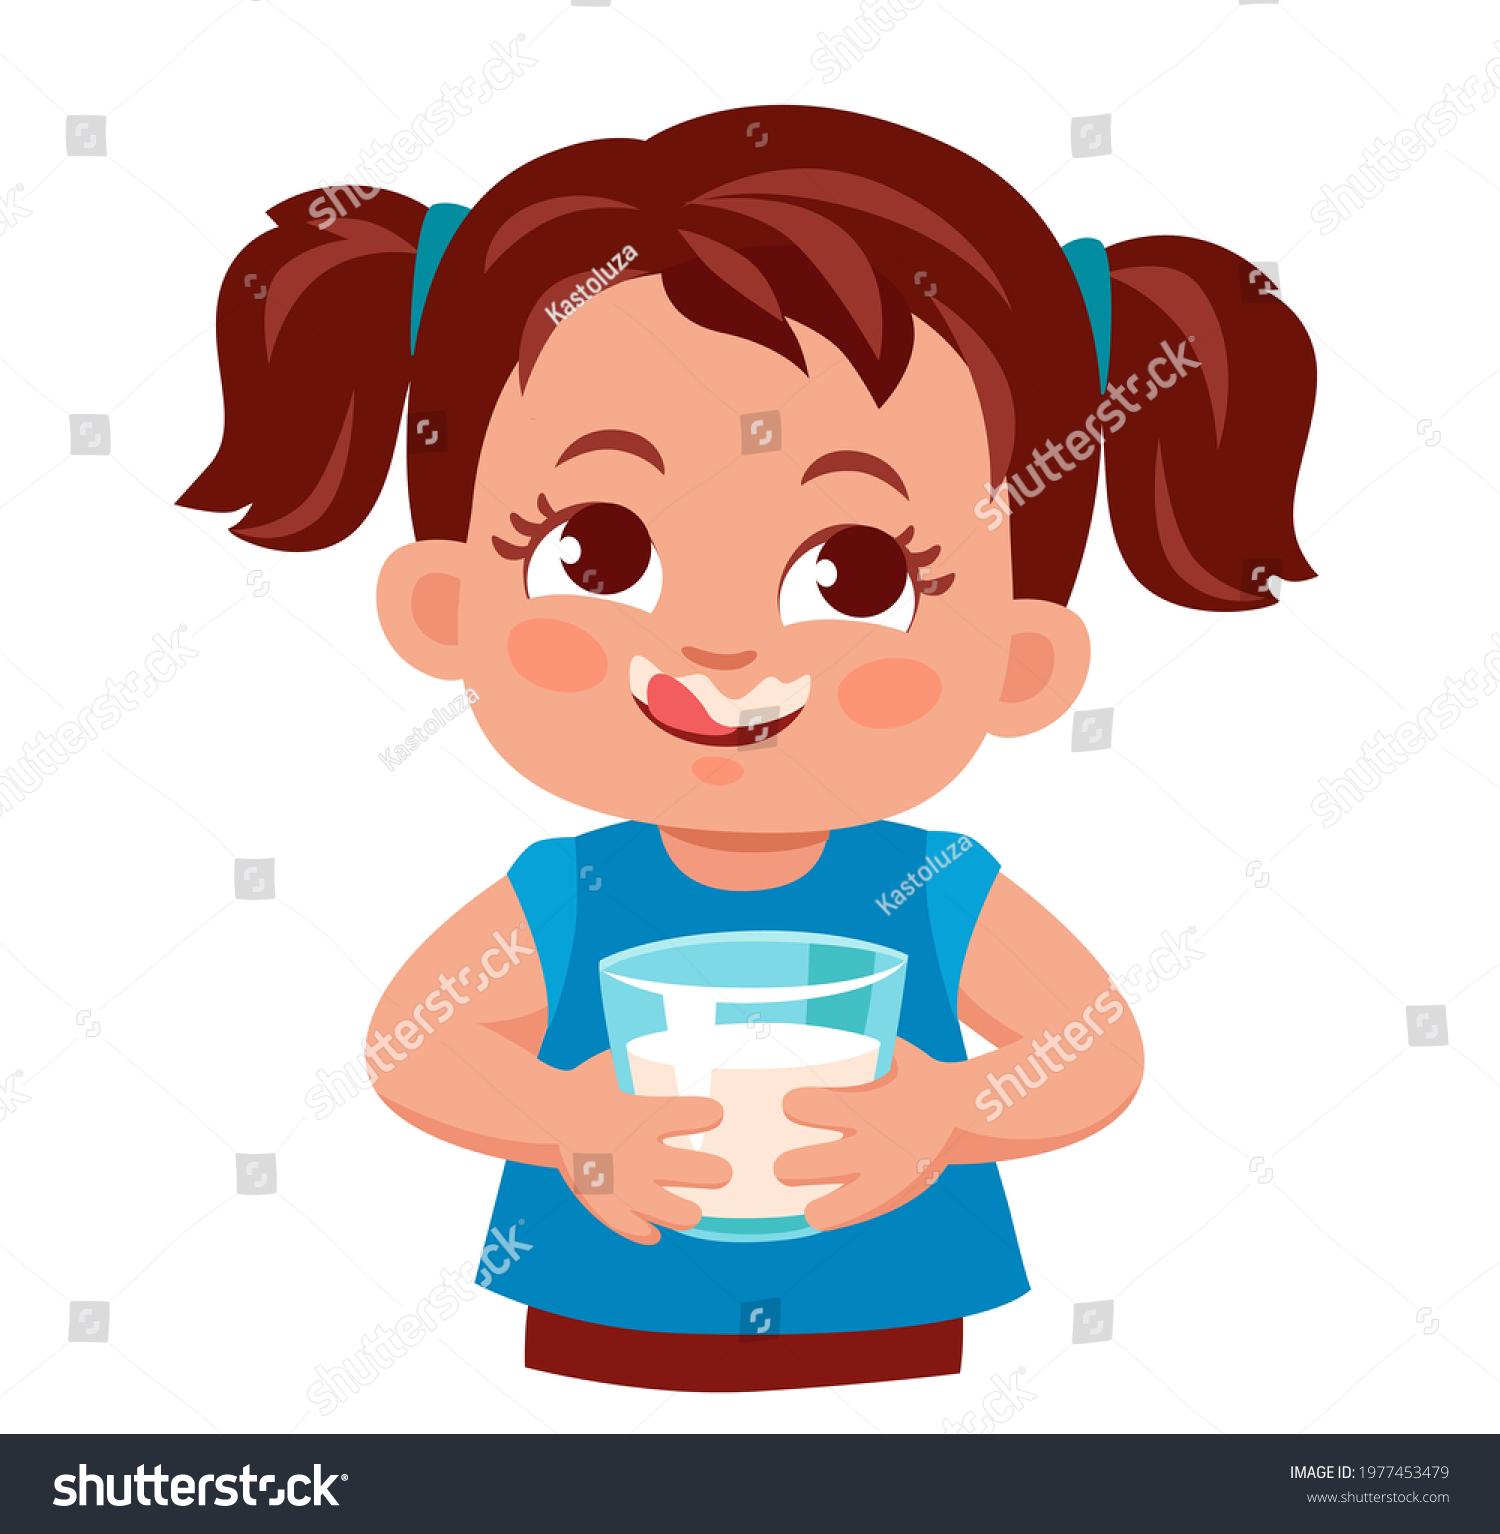 6,488 Licking milk Images, Stock Photos & Vectors | Shutterstock